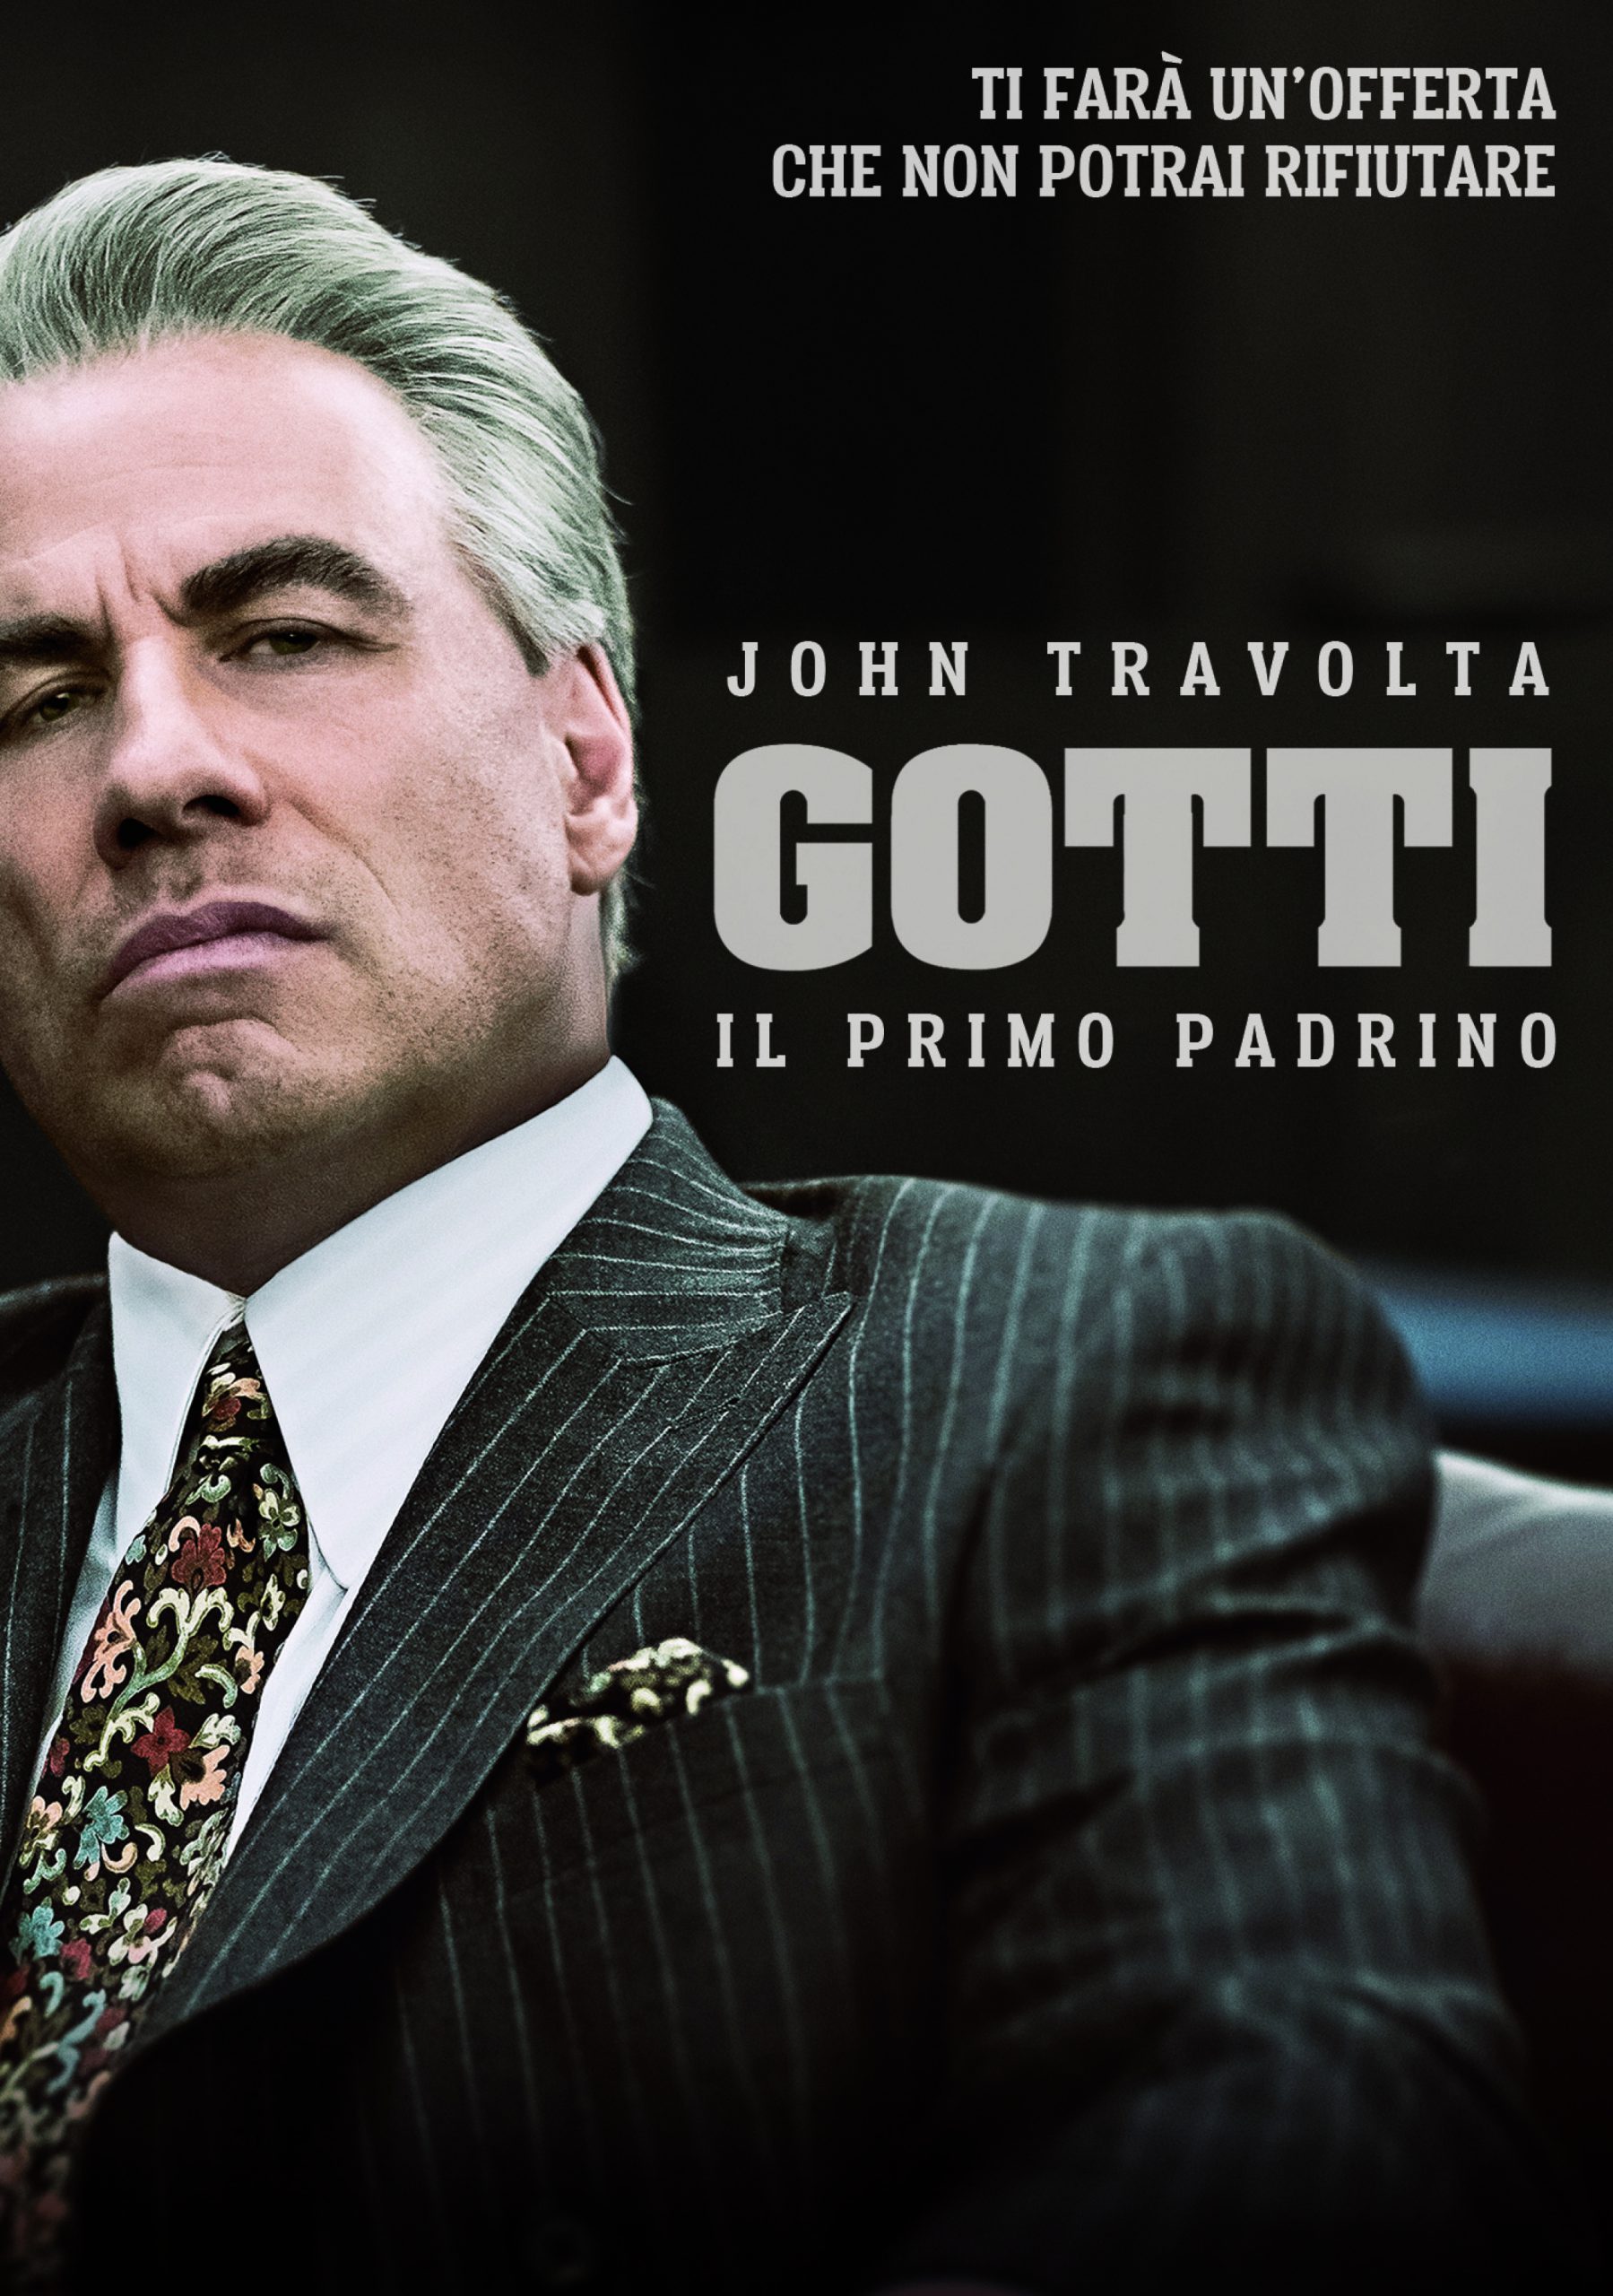 Gotti – Il primo padrino [HD] (2018)